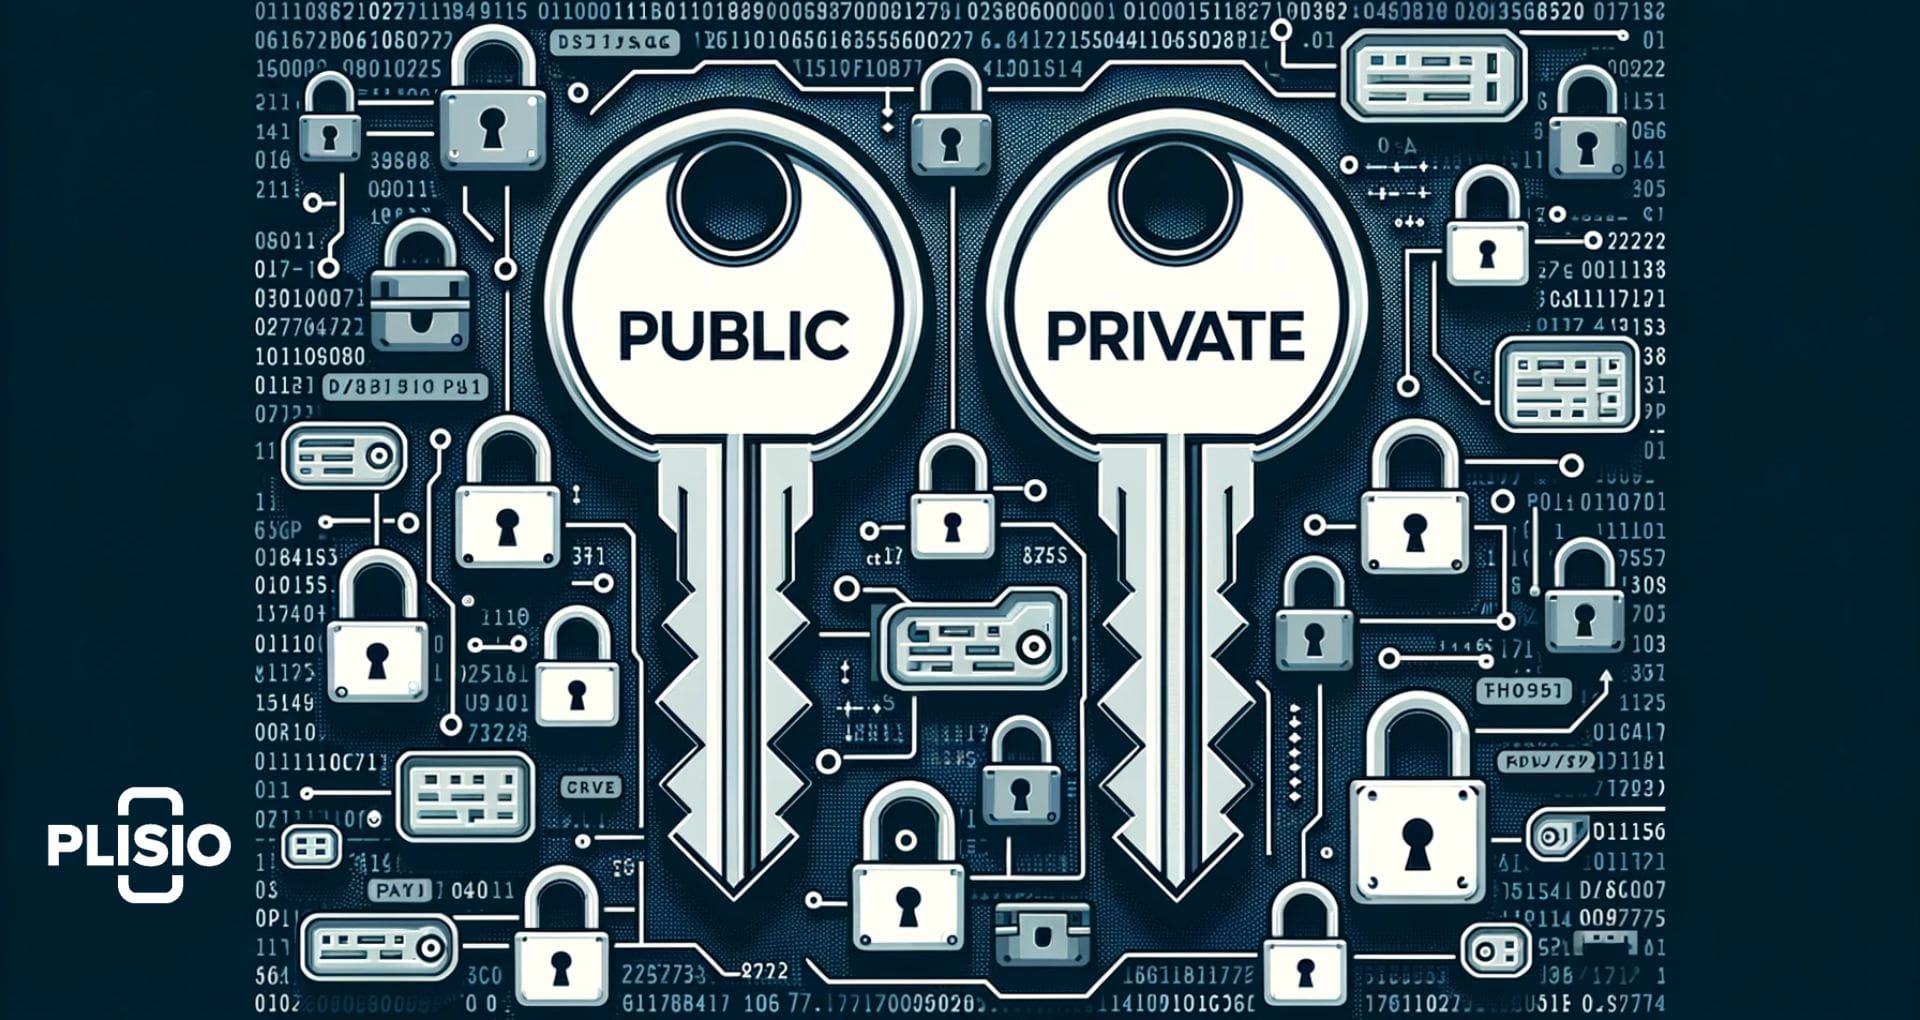 암호화 보안에서 공개 키와 개인 키의 역할 이해.